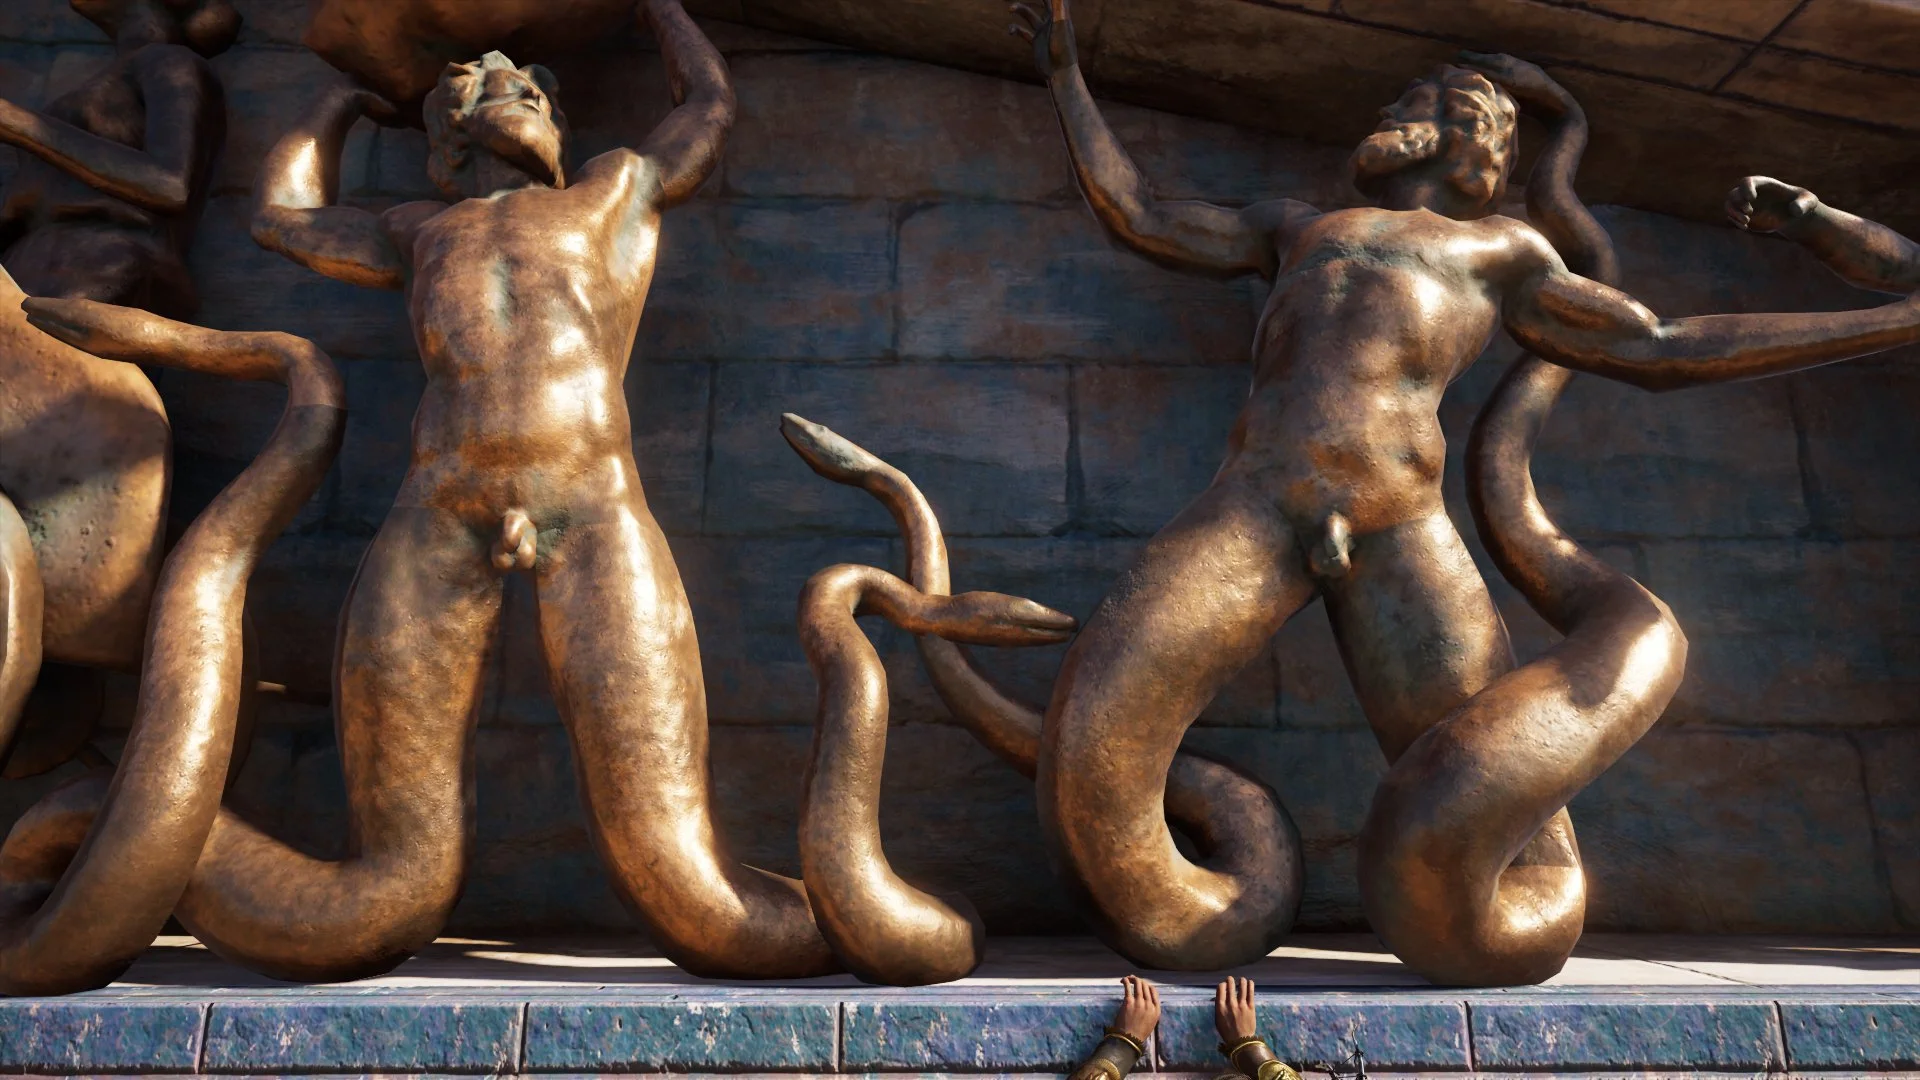 Журналист PC Gamer составил топ пенисов из Assassinʼs Creed Odyssey — речь, конечно, о статуях - фото 6